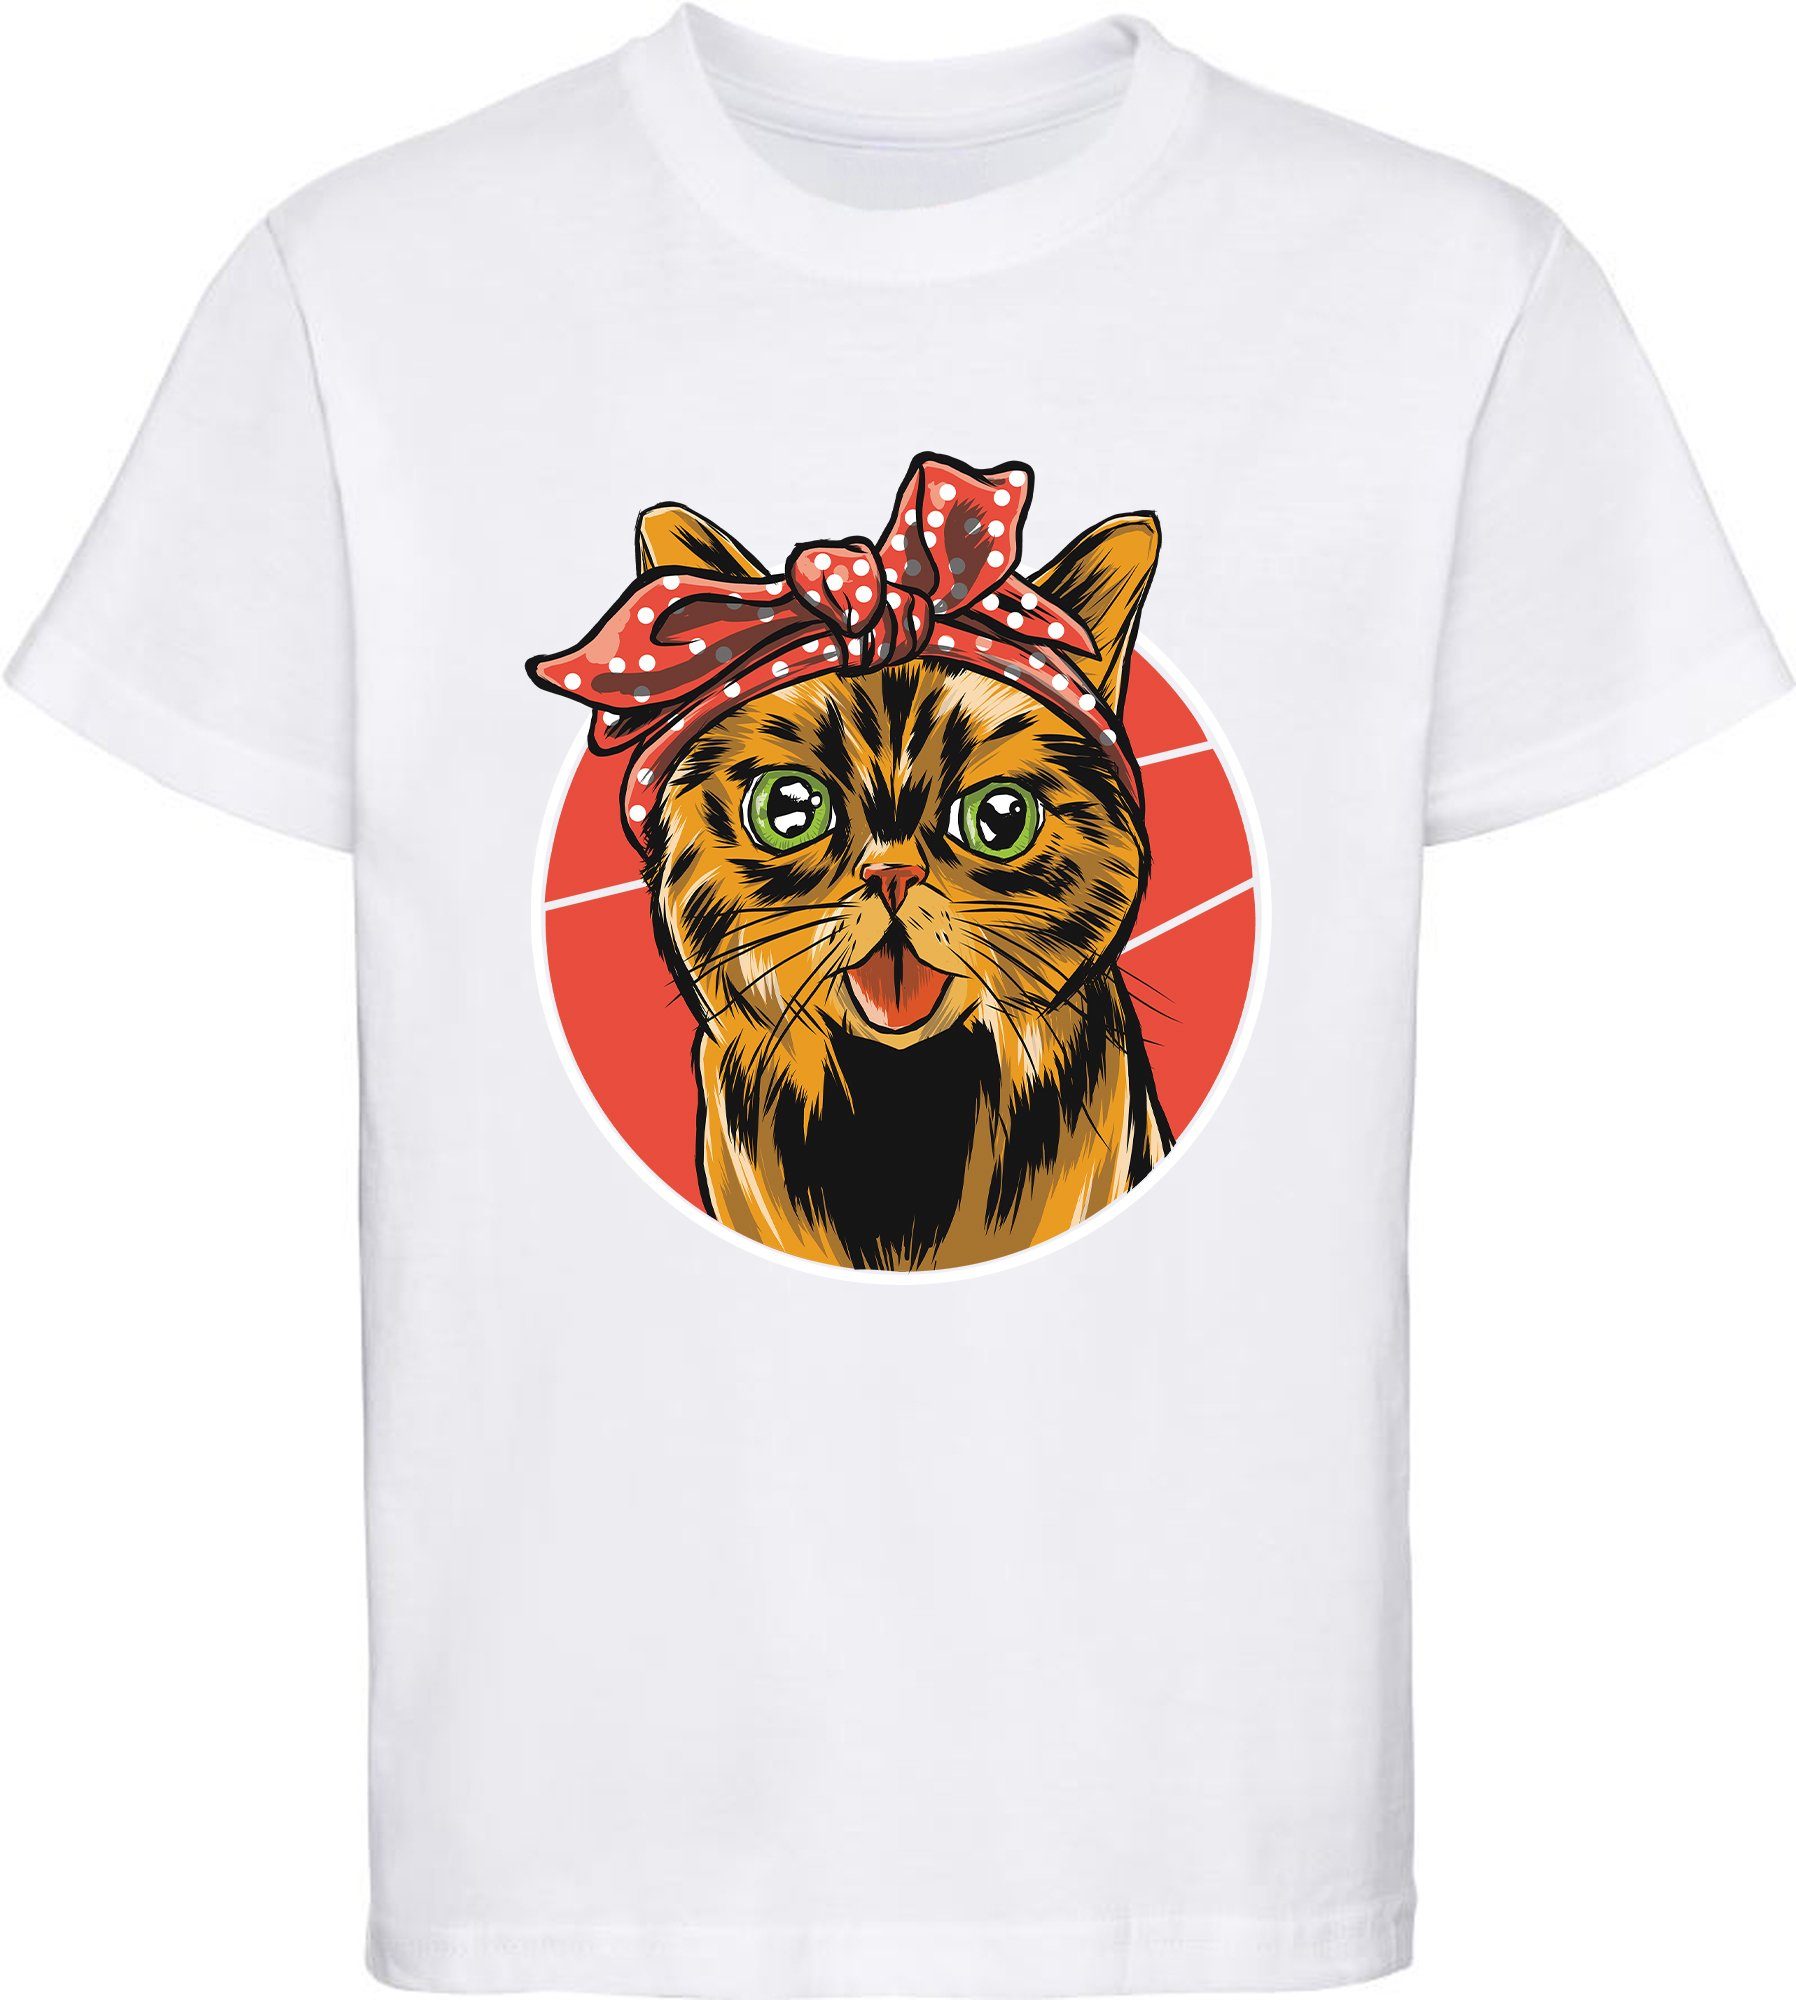 MyDesign24 Print-Shirt bedrucktes Kinder Mädchen T-Shirt Katze mit Schleife Baumwollshirt mit Katze, weiß, schwarz, rot, rosa, i103 weiss